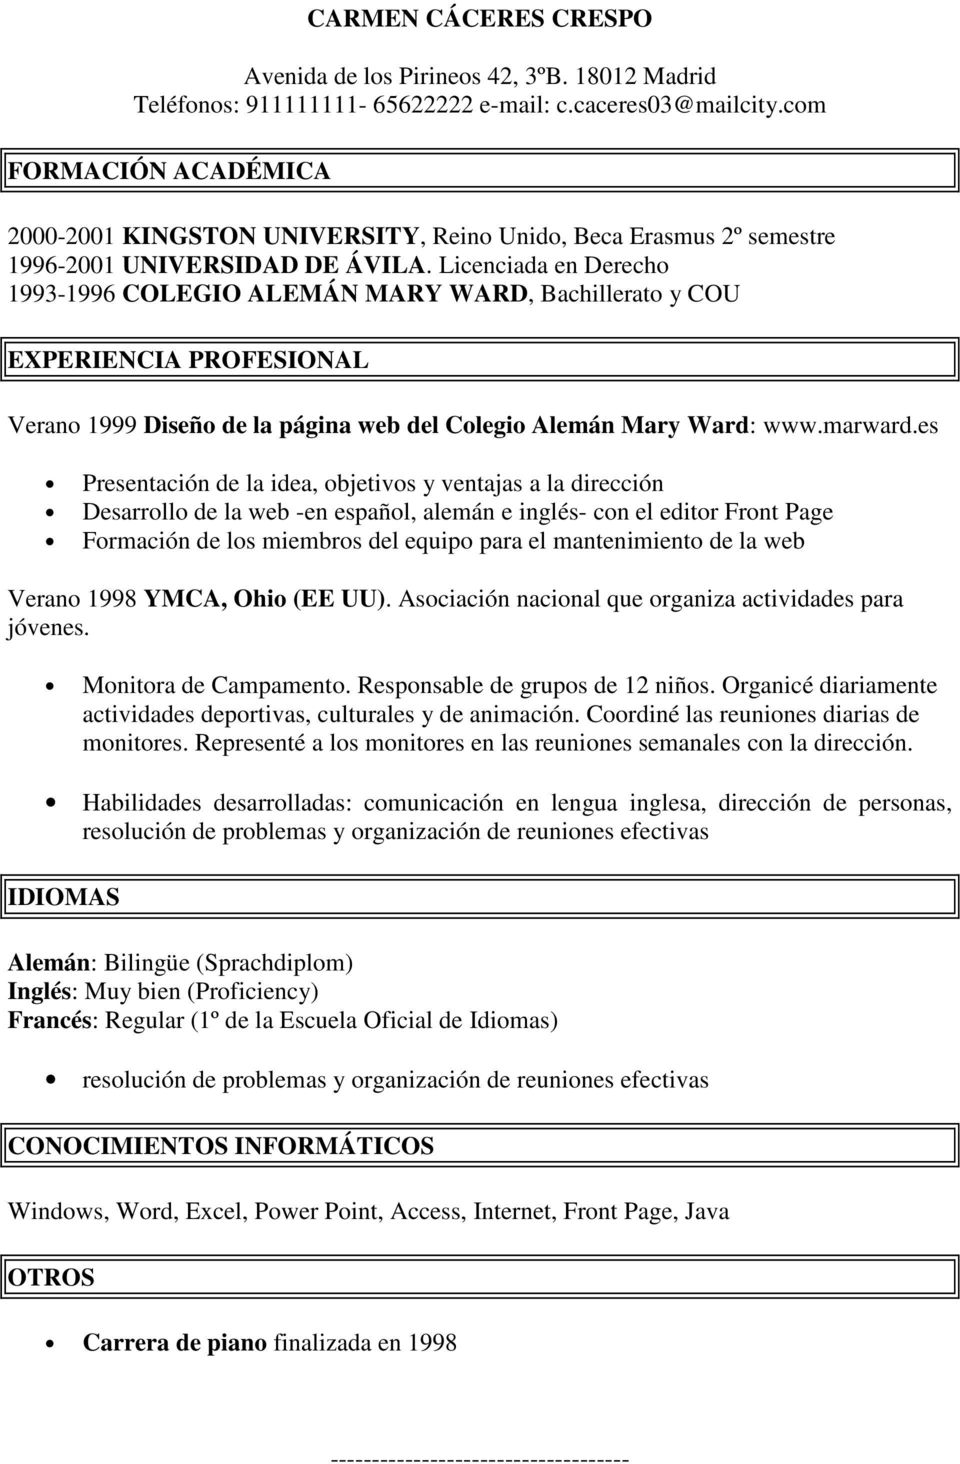 Licenciada en Derecho 1993-1996 COLEGIO ALEMÁN MARY WARD, Bachillerato y COU EXPERIENCIA PROFESIONAL Verano 1999 Diseño de la página web del Colegio Alemán Mary Ward: www.marward.